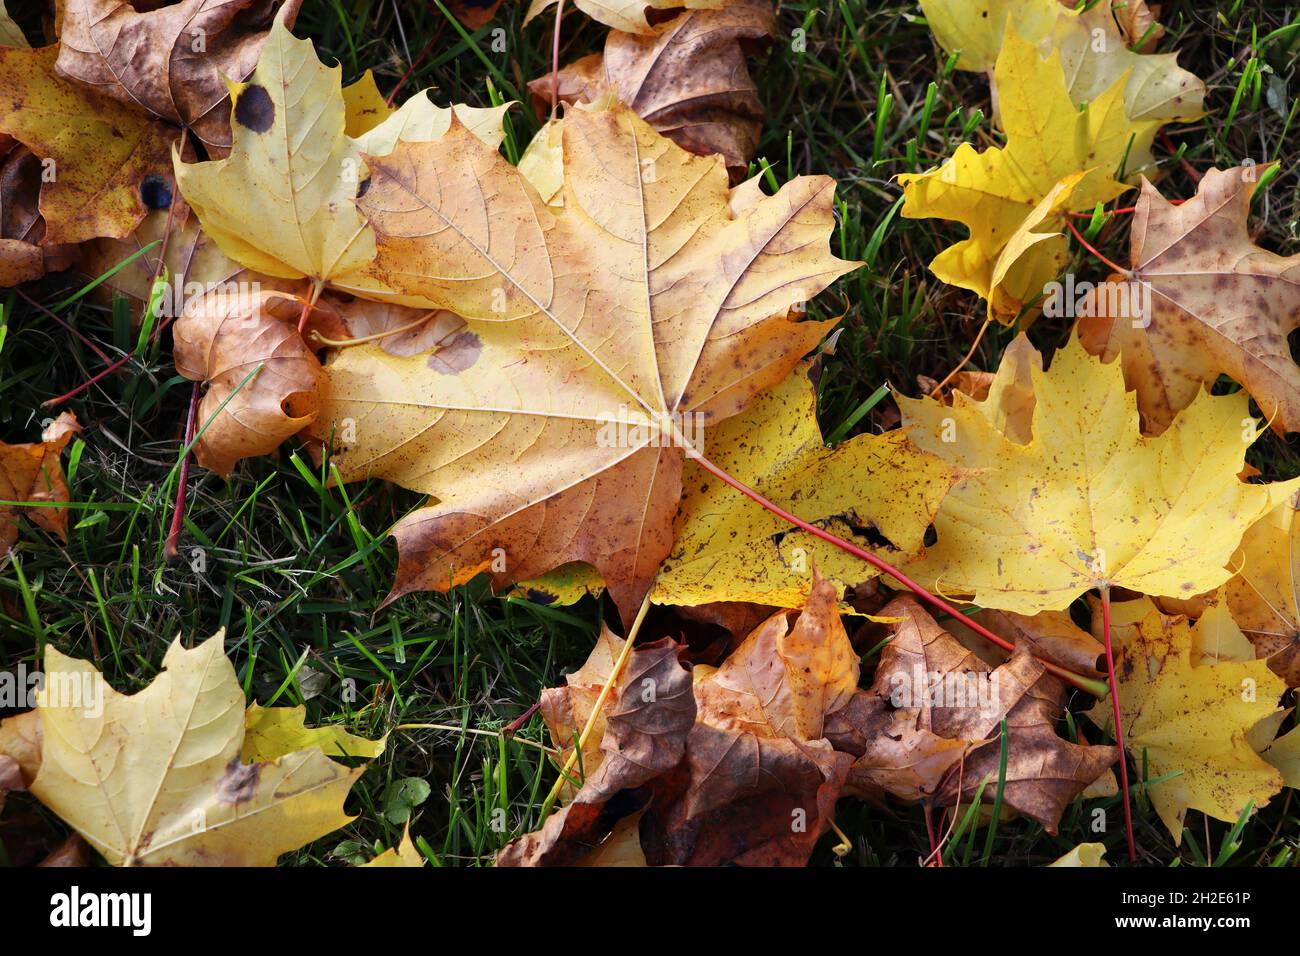 L'automne laisse le fond.Image colorée de l'arrière-plan des feuilles d'automne tombées, parfaite pour une utilisation saisonnière. Banque D'Images